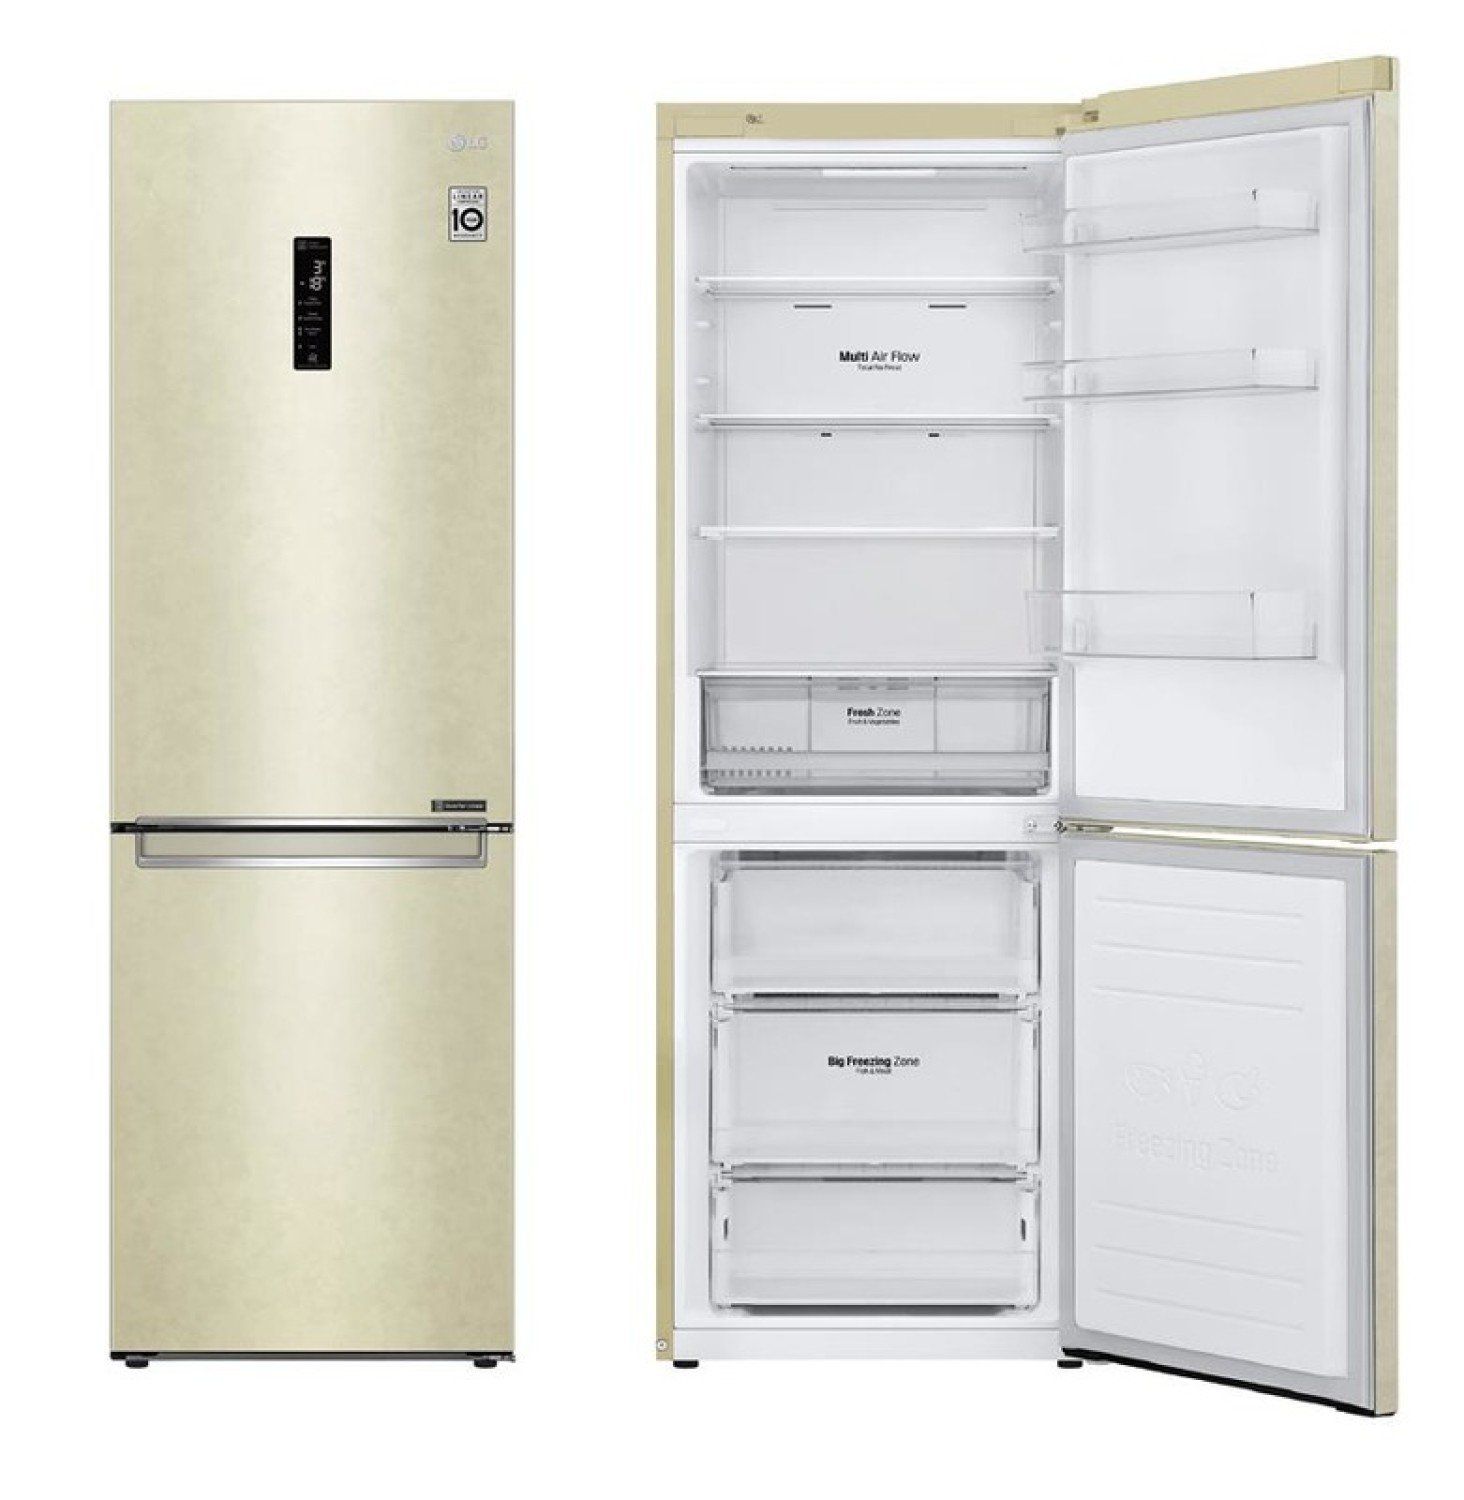 холодильник lg ga-b409seqa, купить в Красноярске холодильник lg ga-b409seqa,  купить в Красноярске дешево холодильник lg ga-b409seqa, купить в Красноярске минимальной цене холодильник lg ga-b409seqa